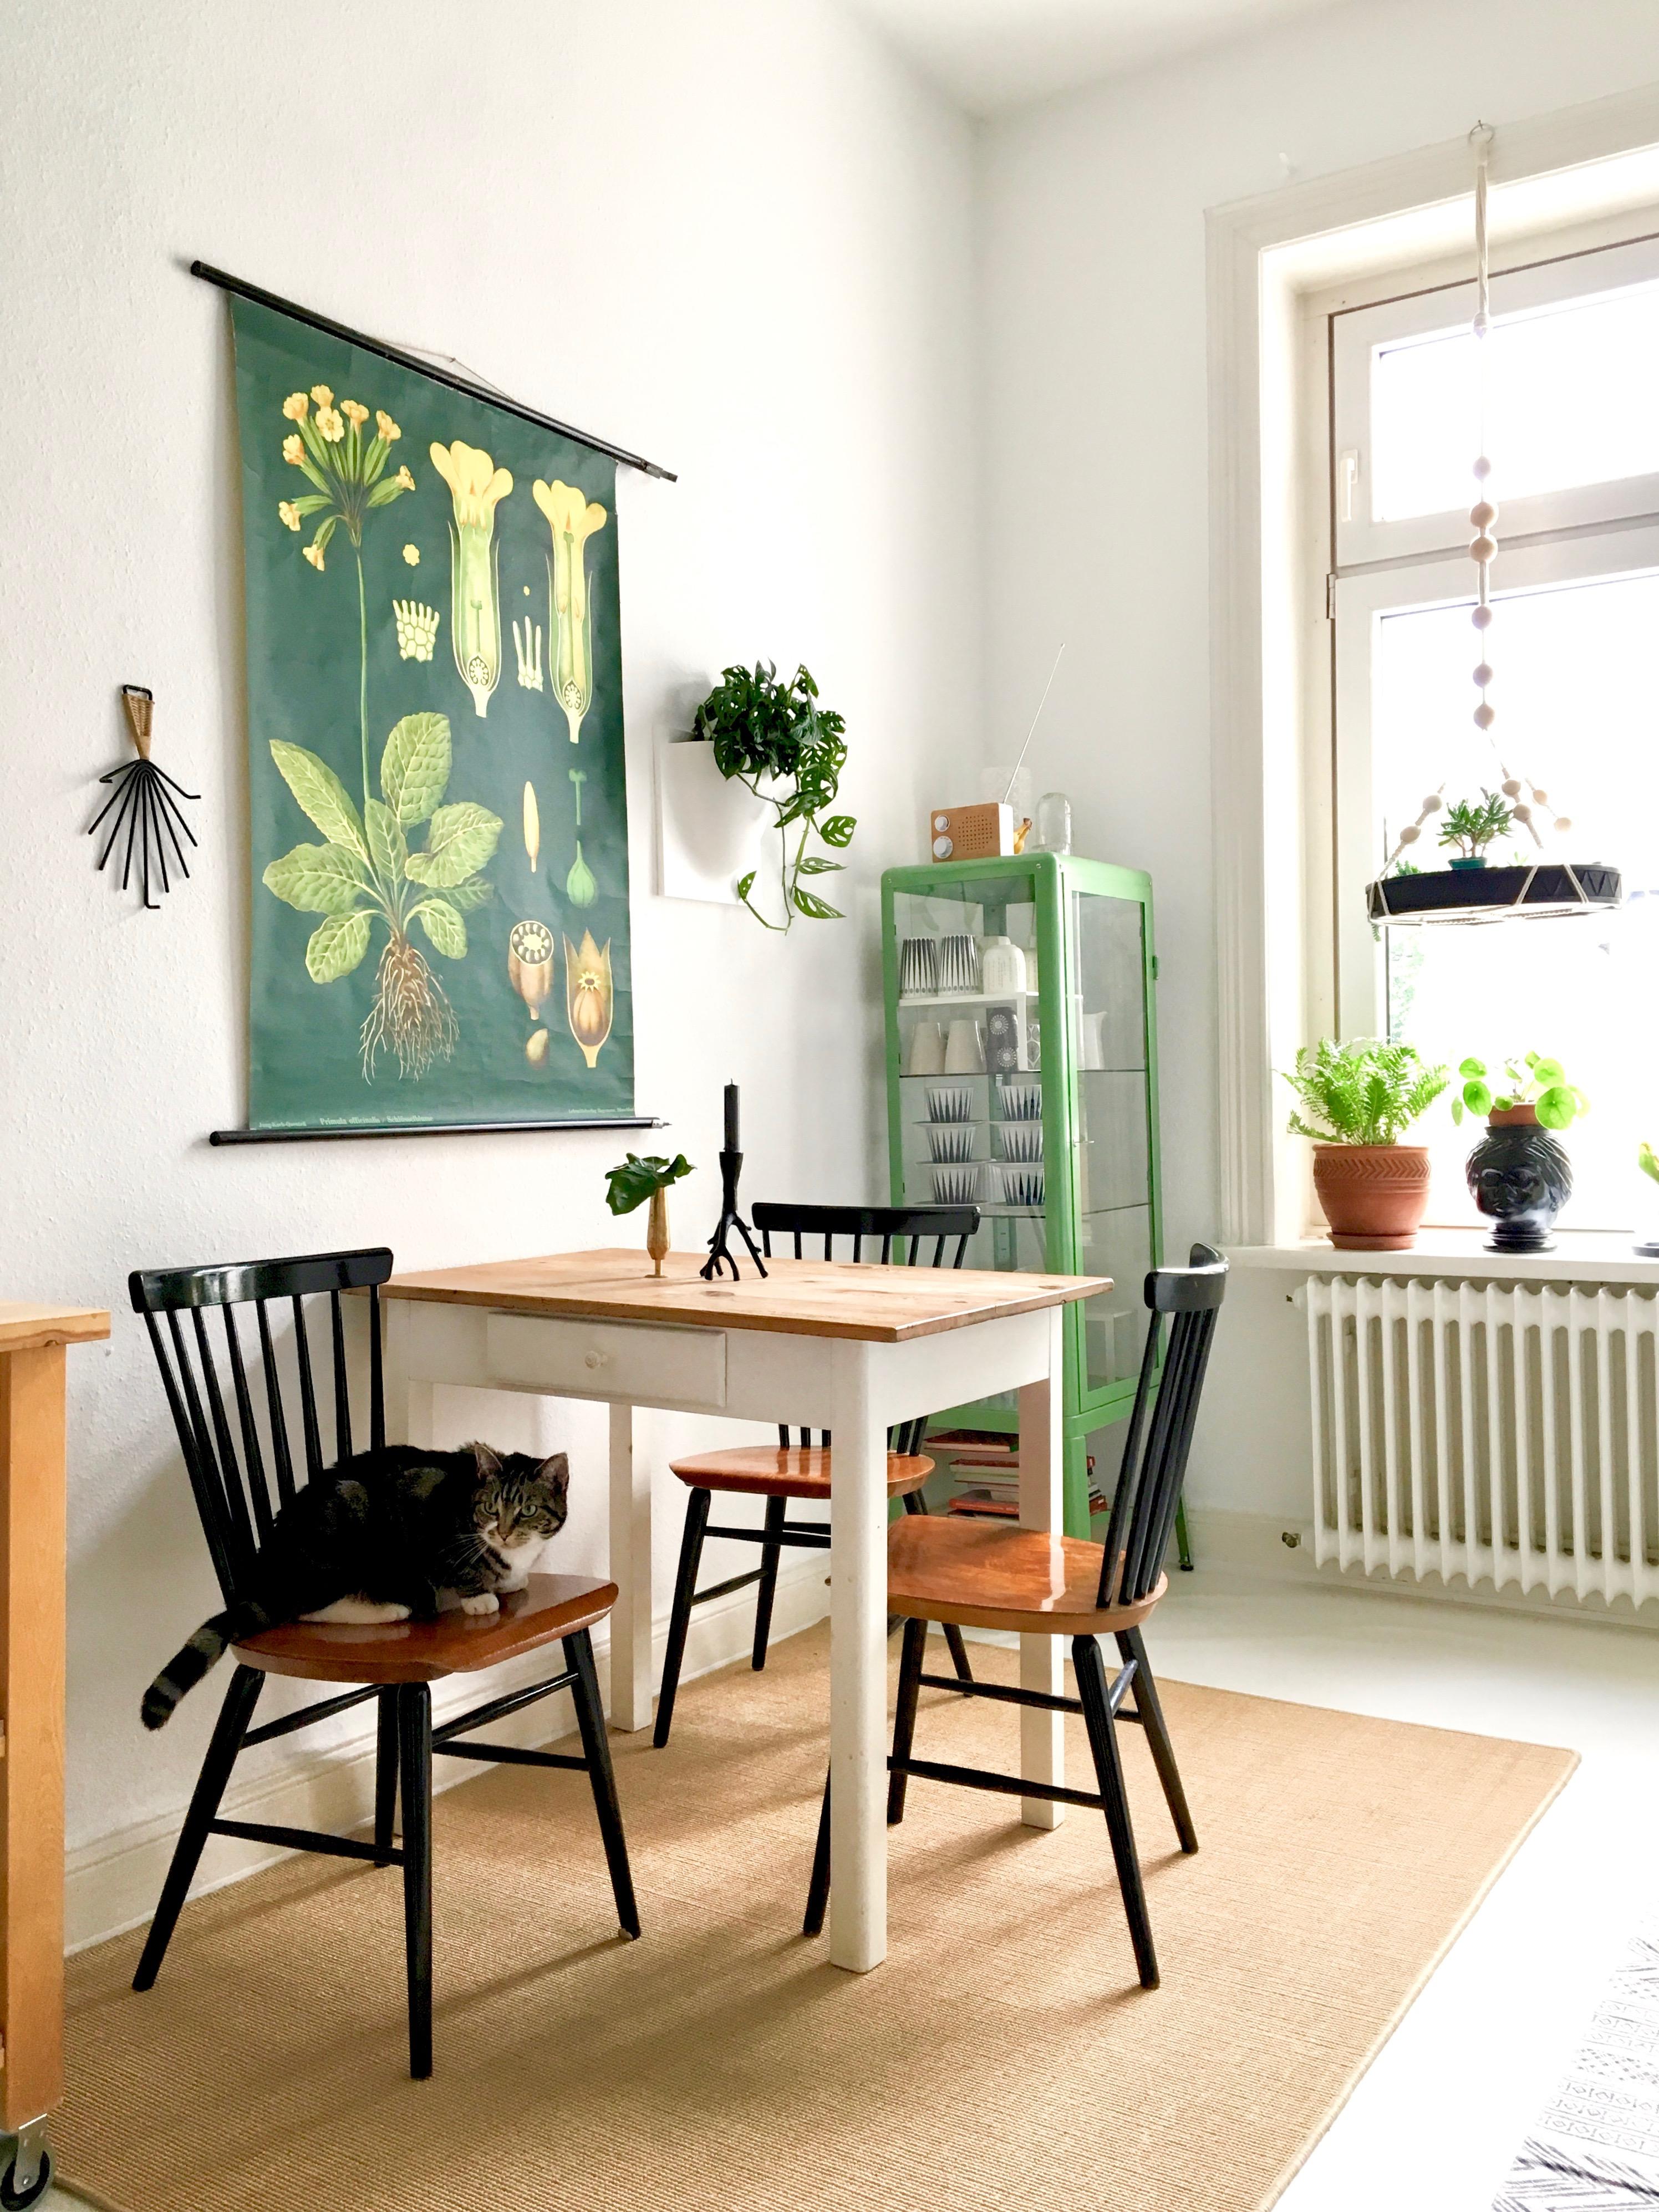 Warten aufs Frühstück 👁 🌿 ●
#Küche #Küchenliebe #Greenery #Katze #Altbau #Zimmerpflanzen #Vintage